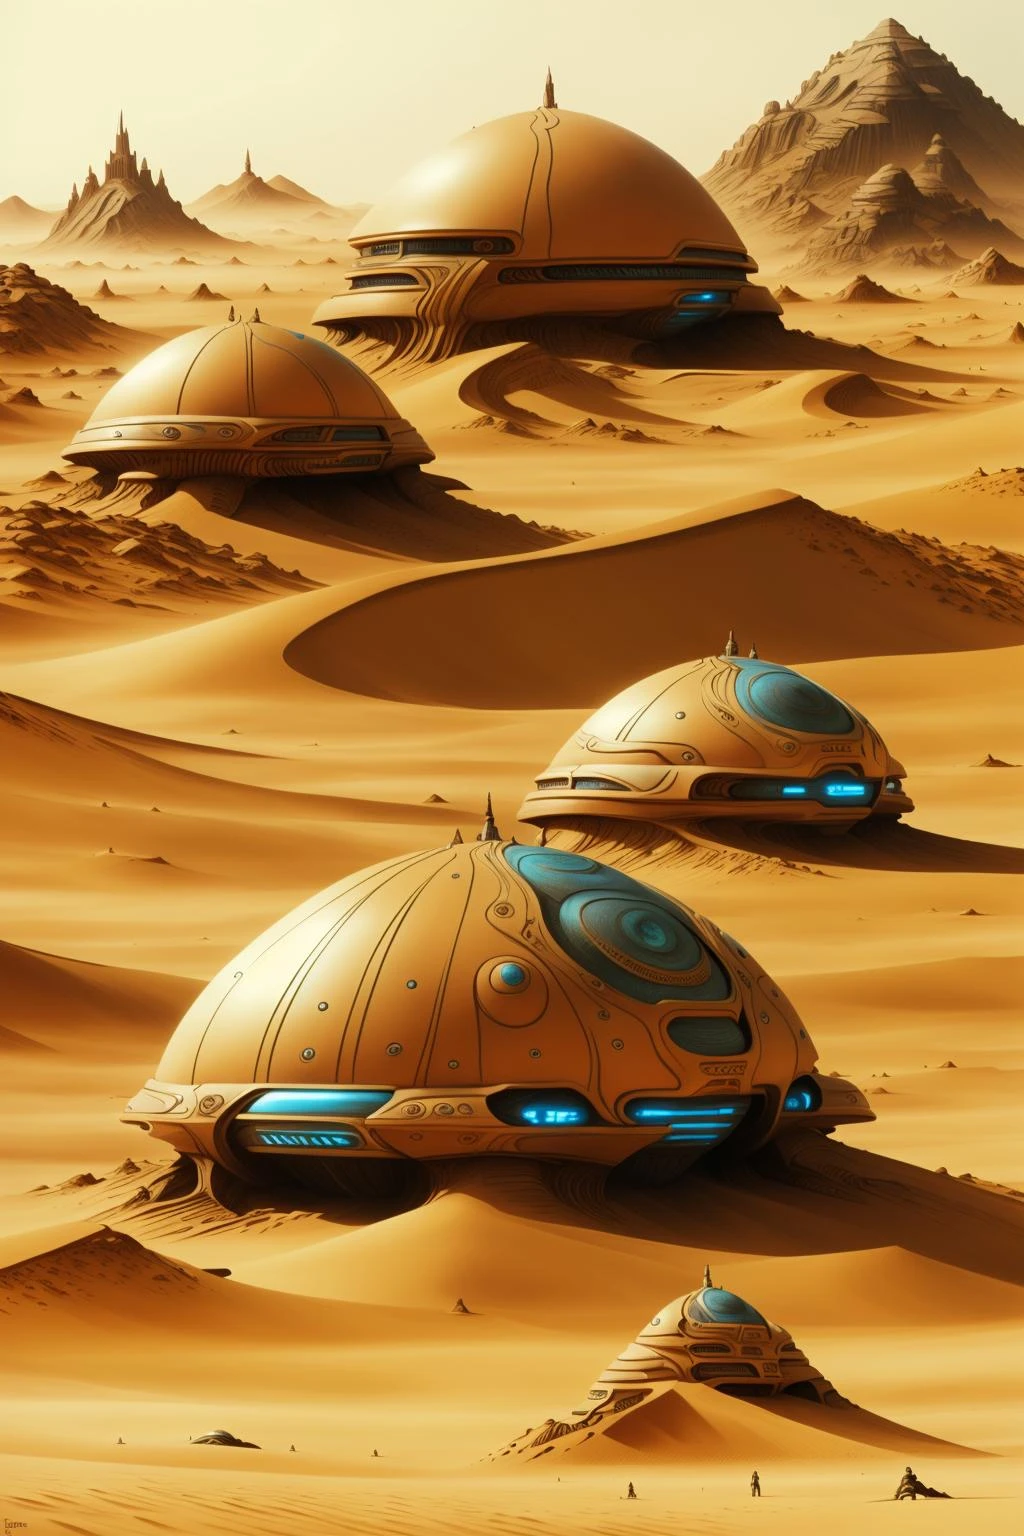 沙丘電影中的角色, a futuristic city in the 沙漠 with a giant dome , 戶外, 多個男孩, 風景, 山, 沙, 太空船, 沙漠 , 科幻, 田野中央的幾塊岩石